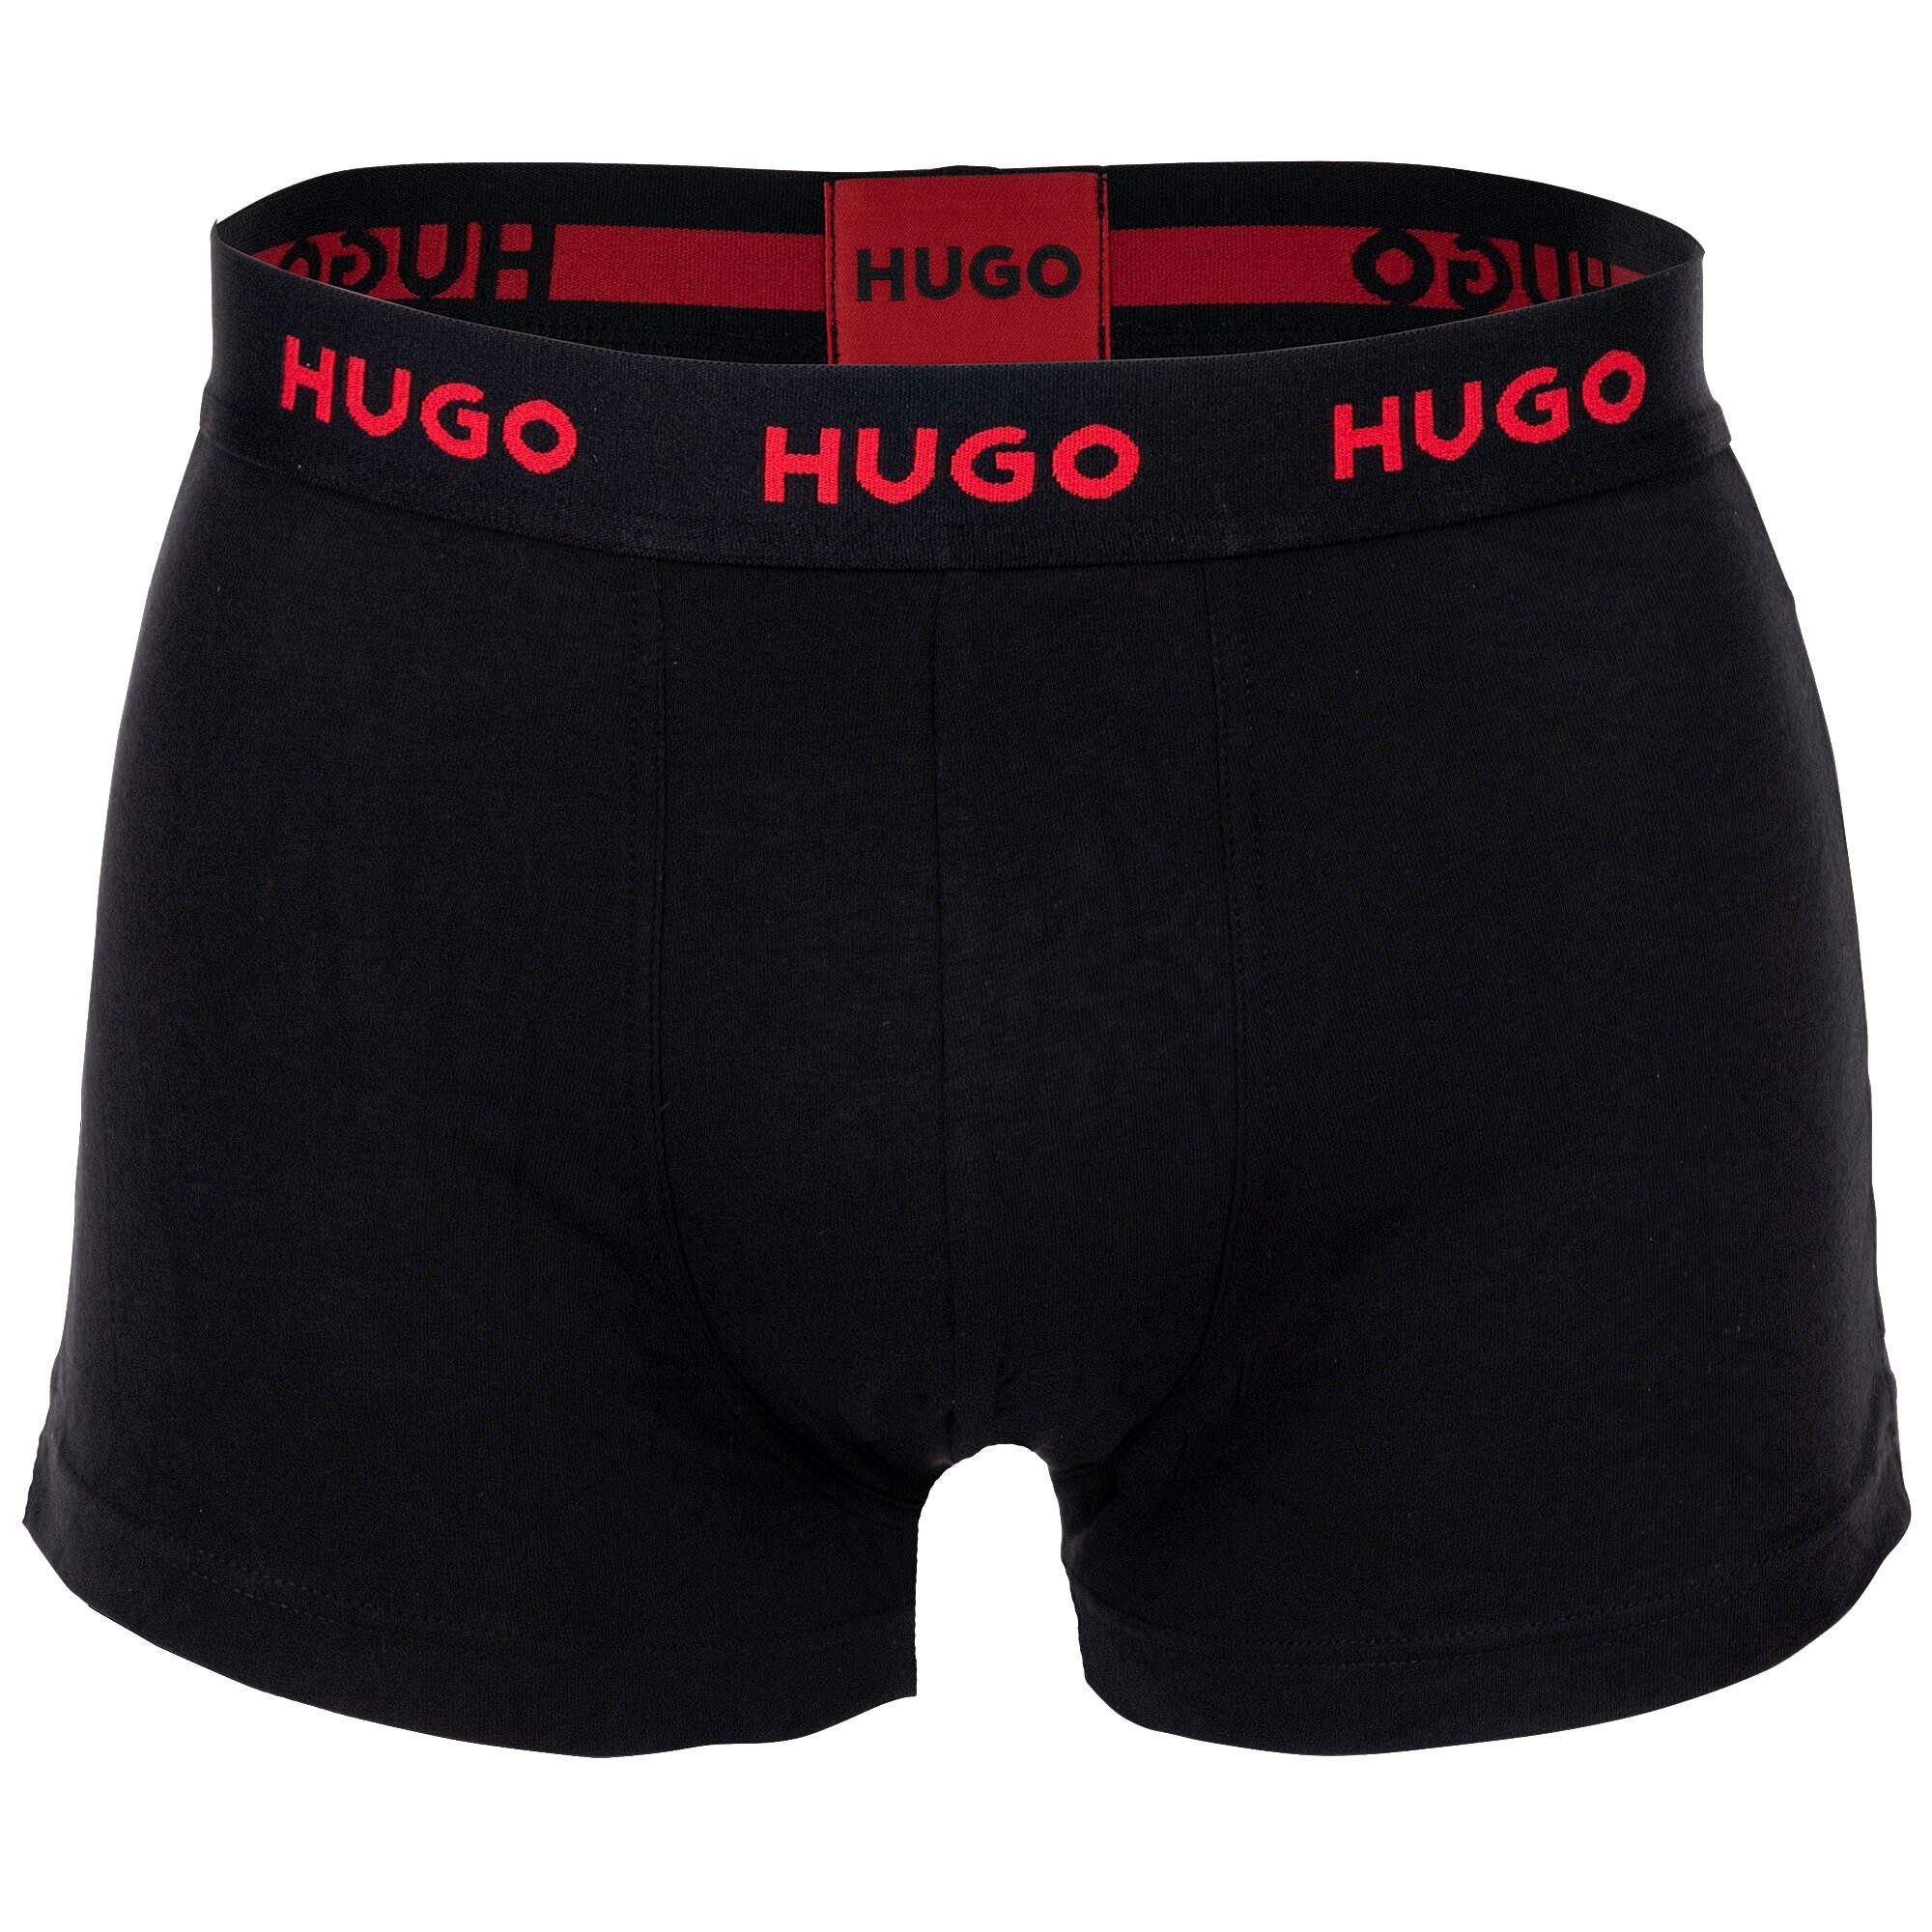 HUGO Boxer Herren Boxer Trunks Shorts, Triplet 3er Rot/Weiß/Schwarz - Pack